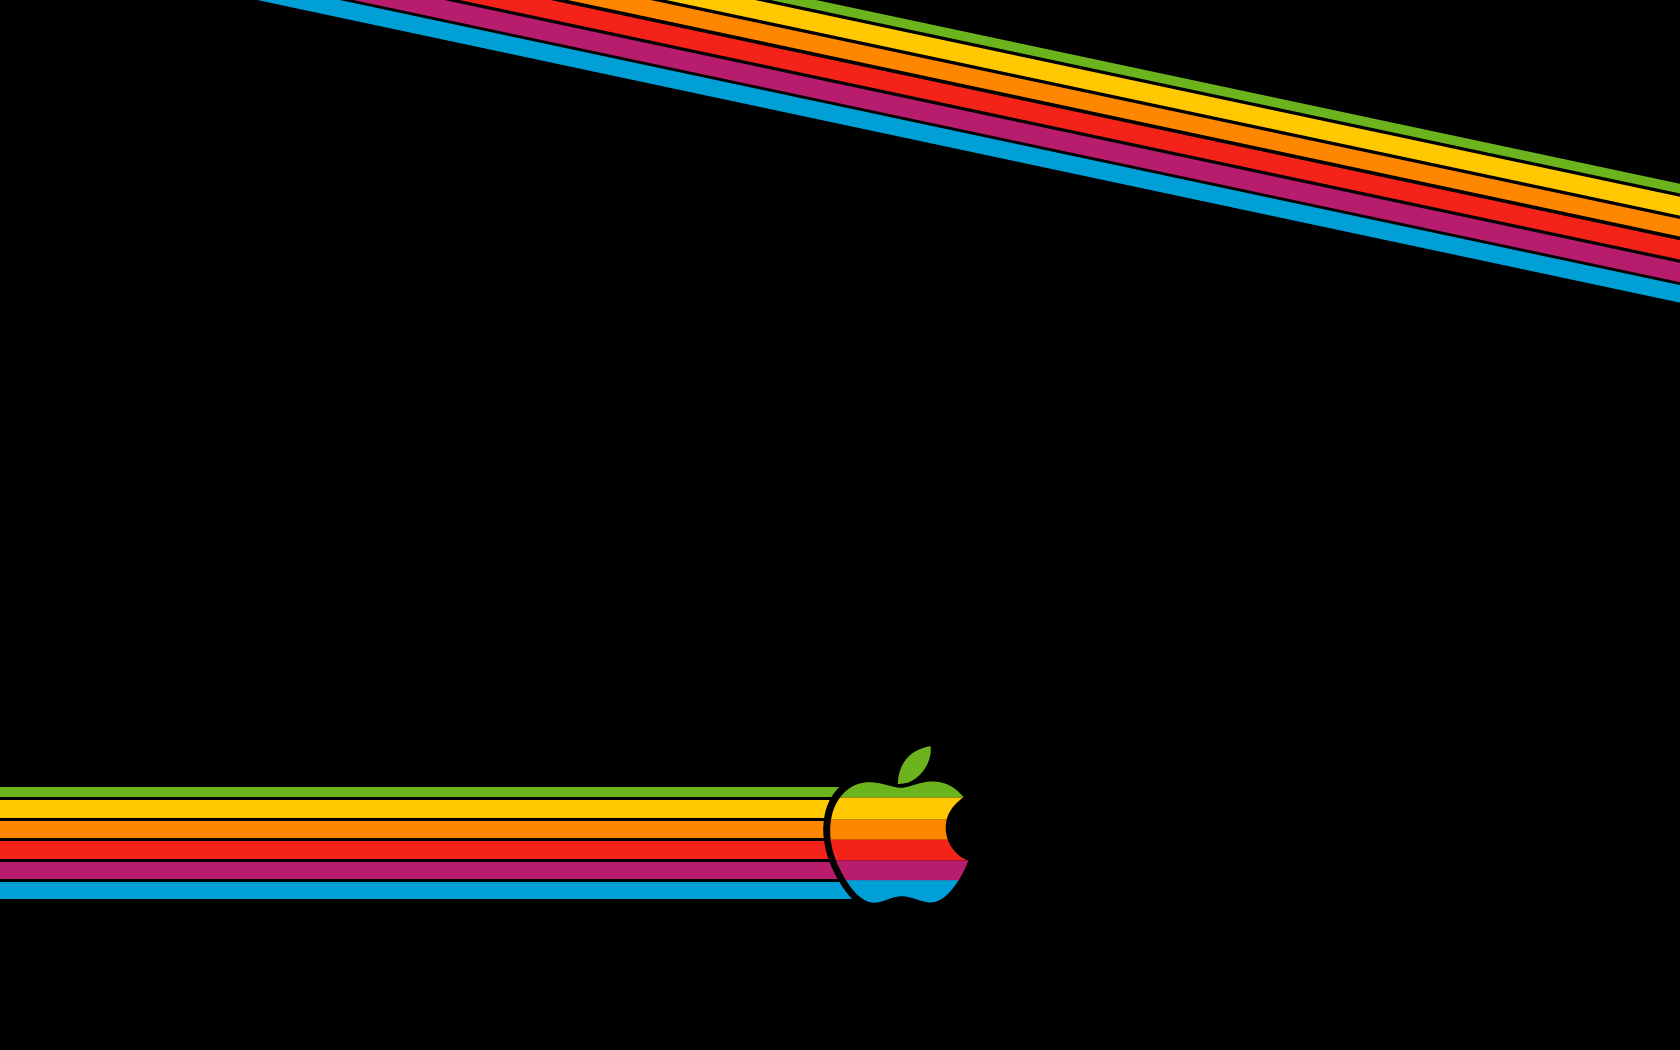 Apple rainbow logo wallpaper. Wallpaper Wide HD